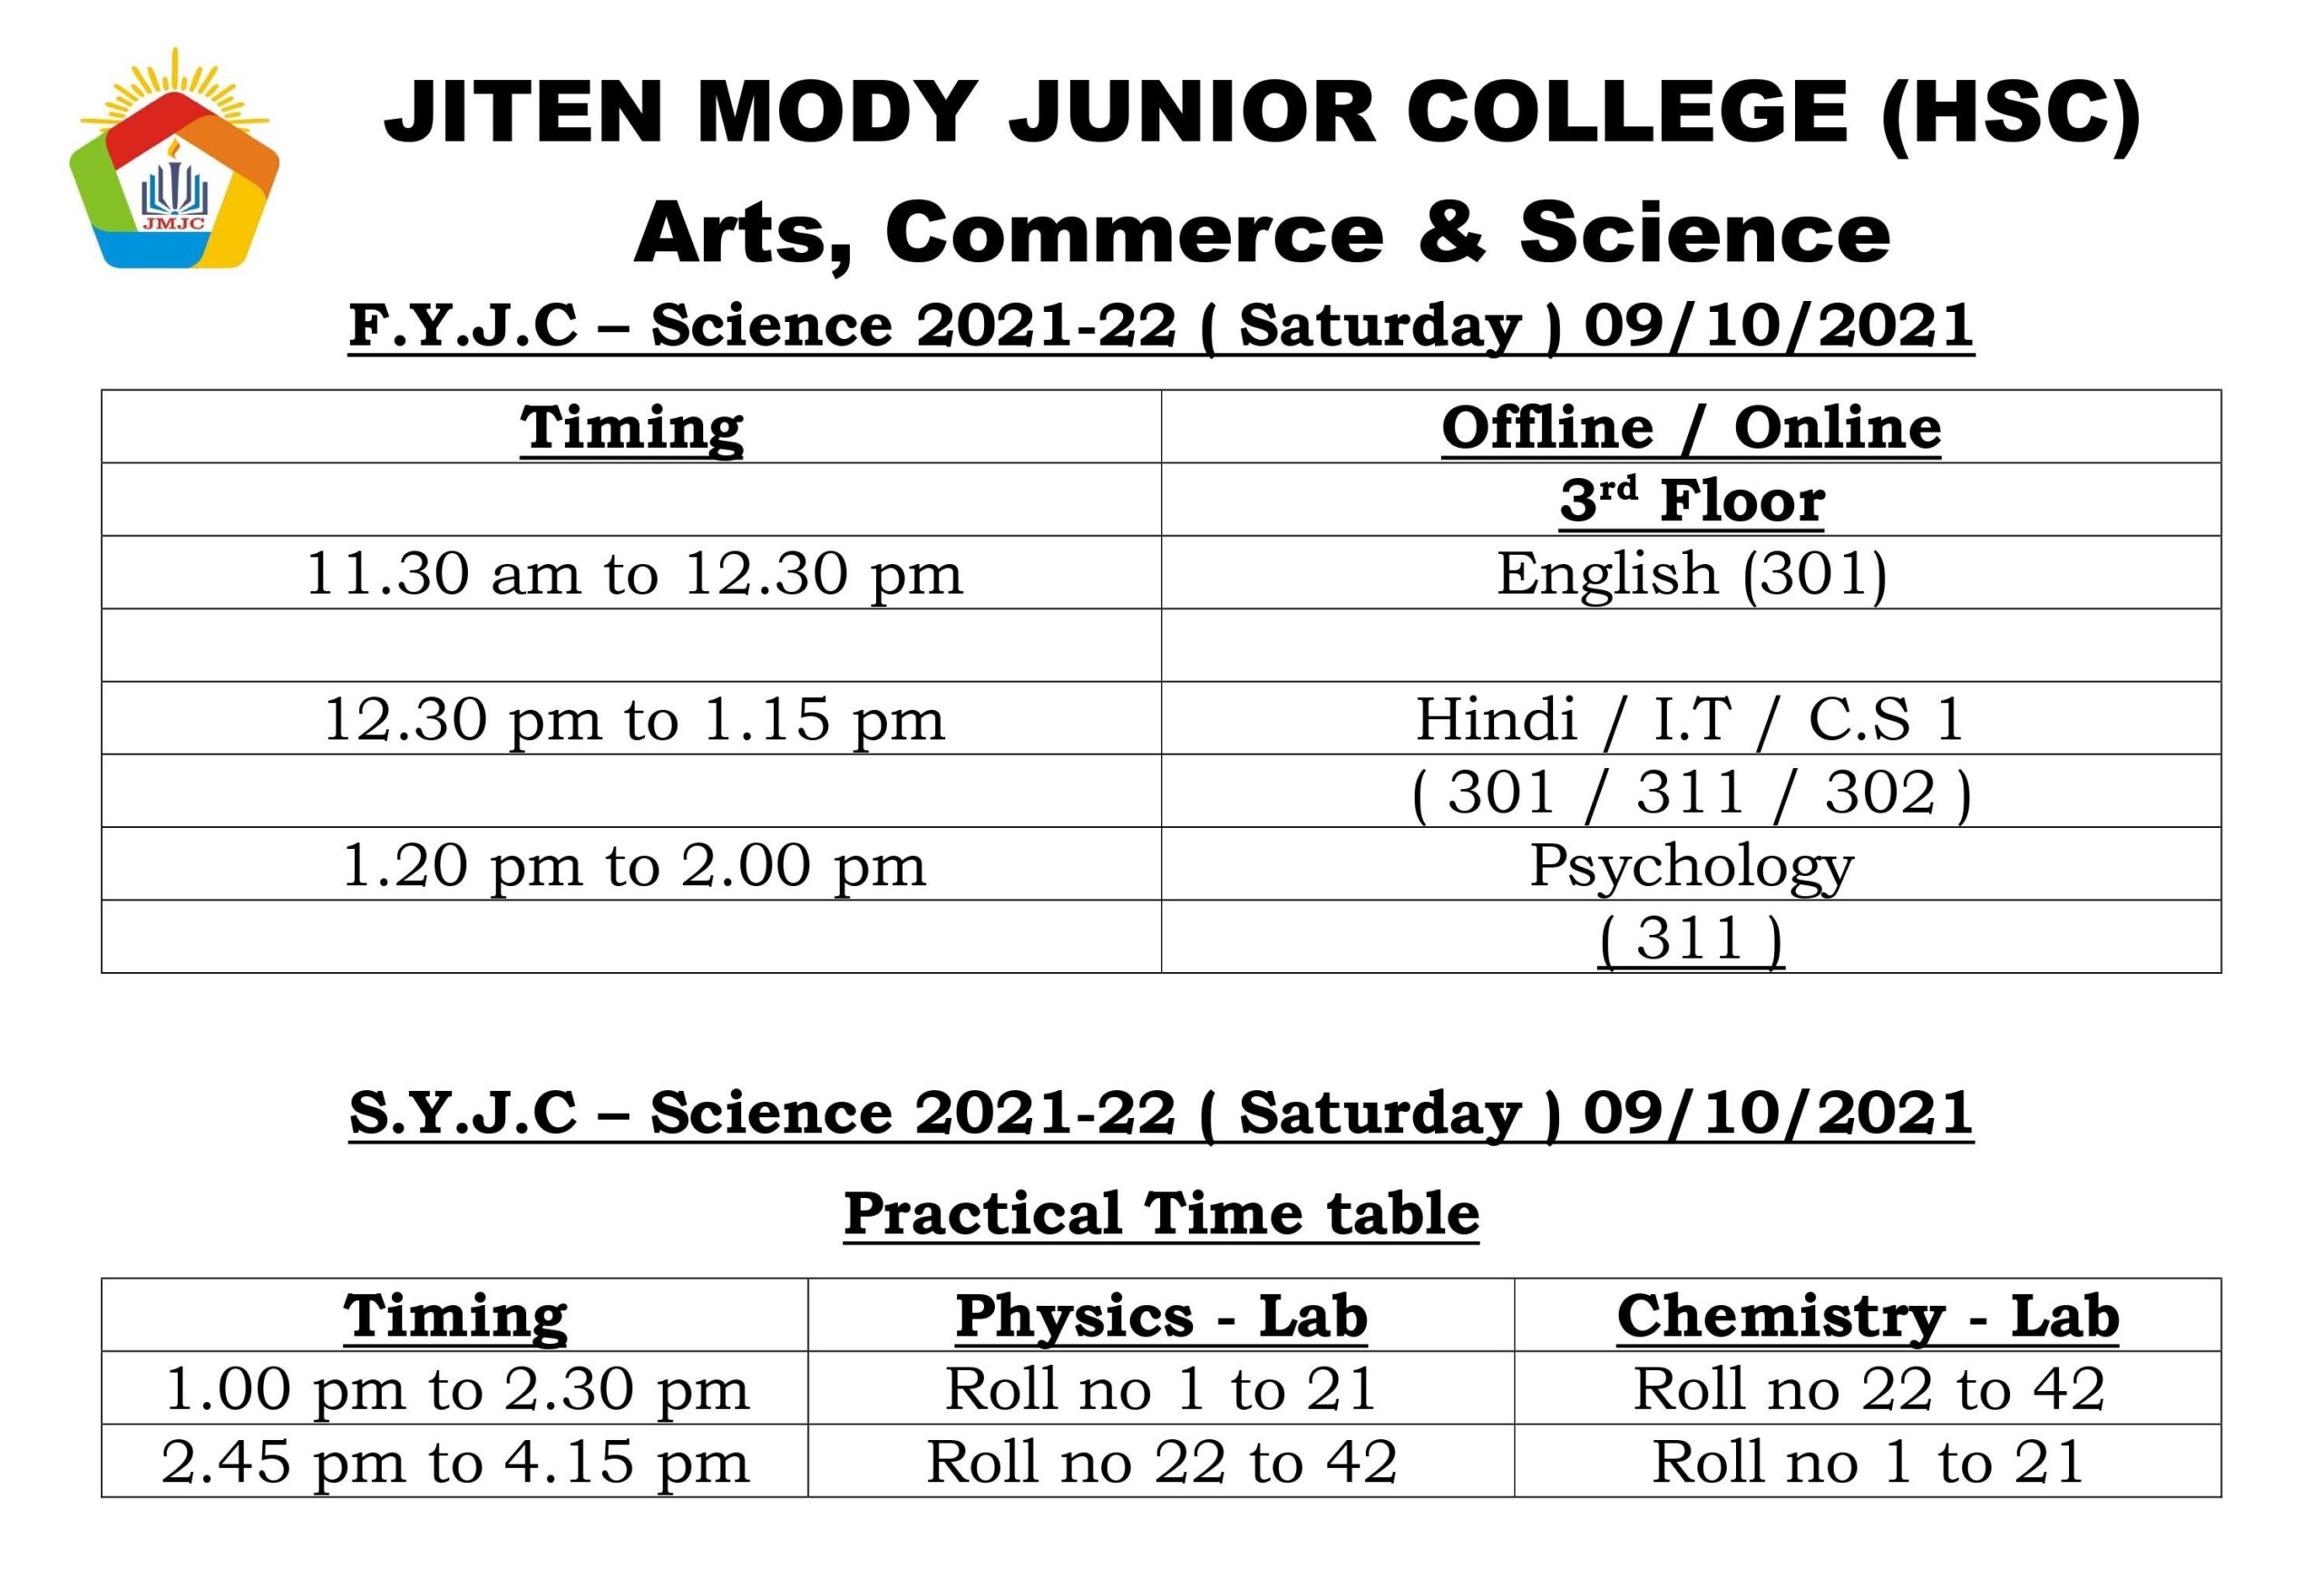 jmjc online timetable jiten mody jr college3